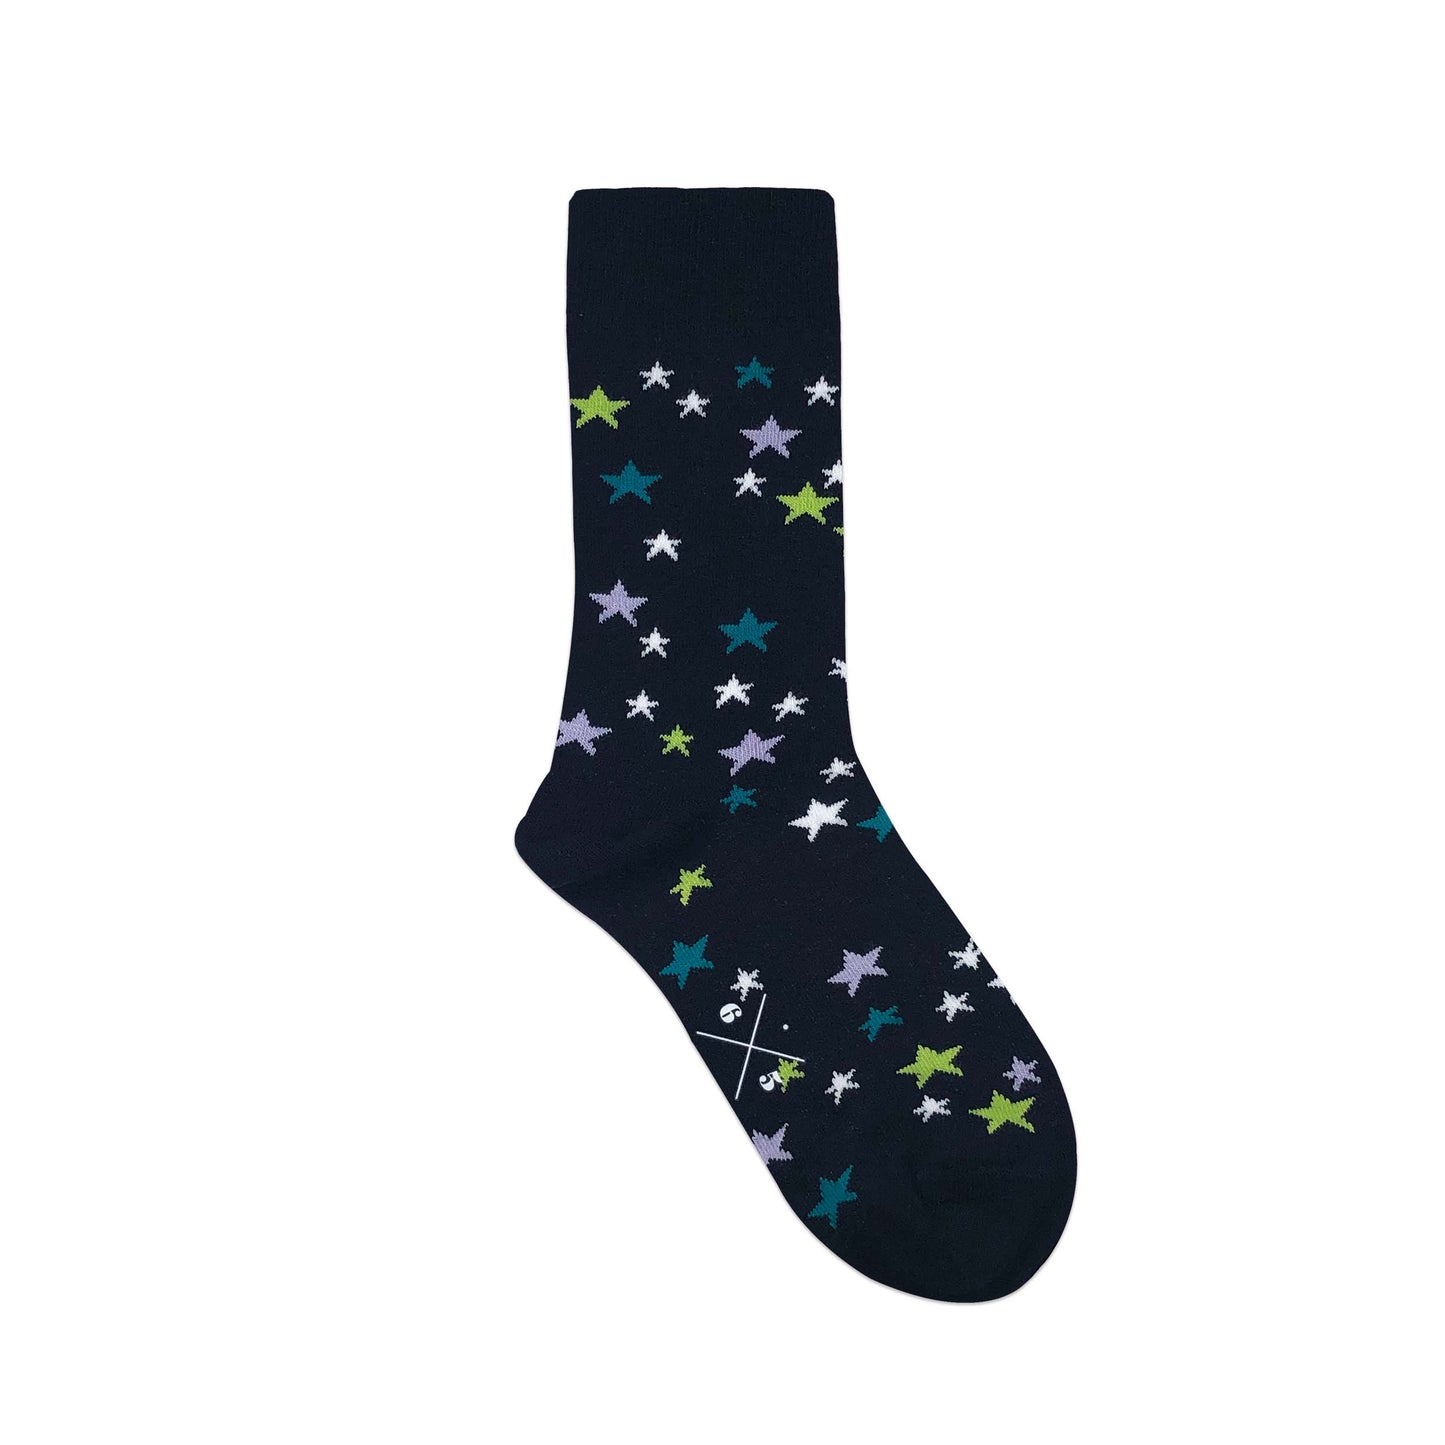 STARS Siyah Çok Renkli Yıldızlı Desenli Unisex Çorap - sixtimesfive